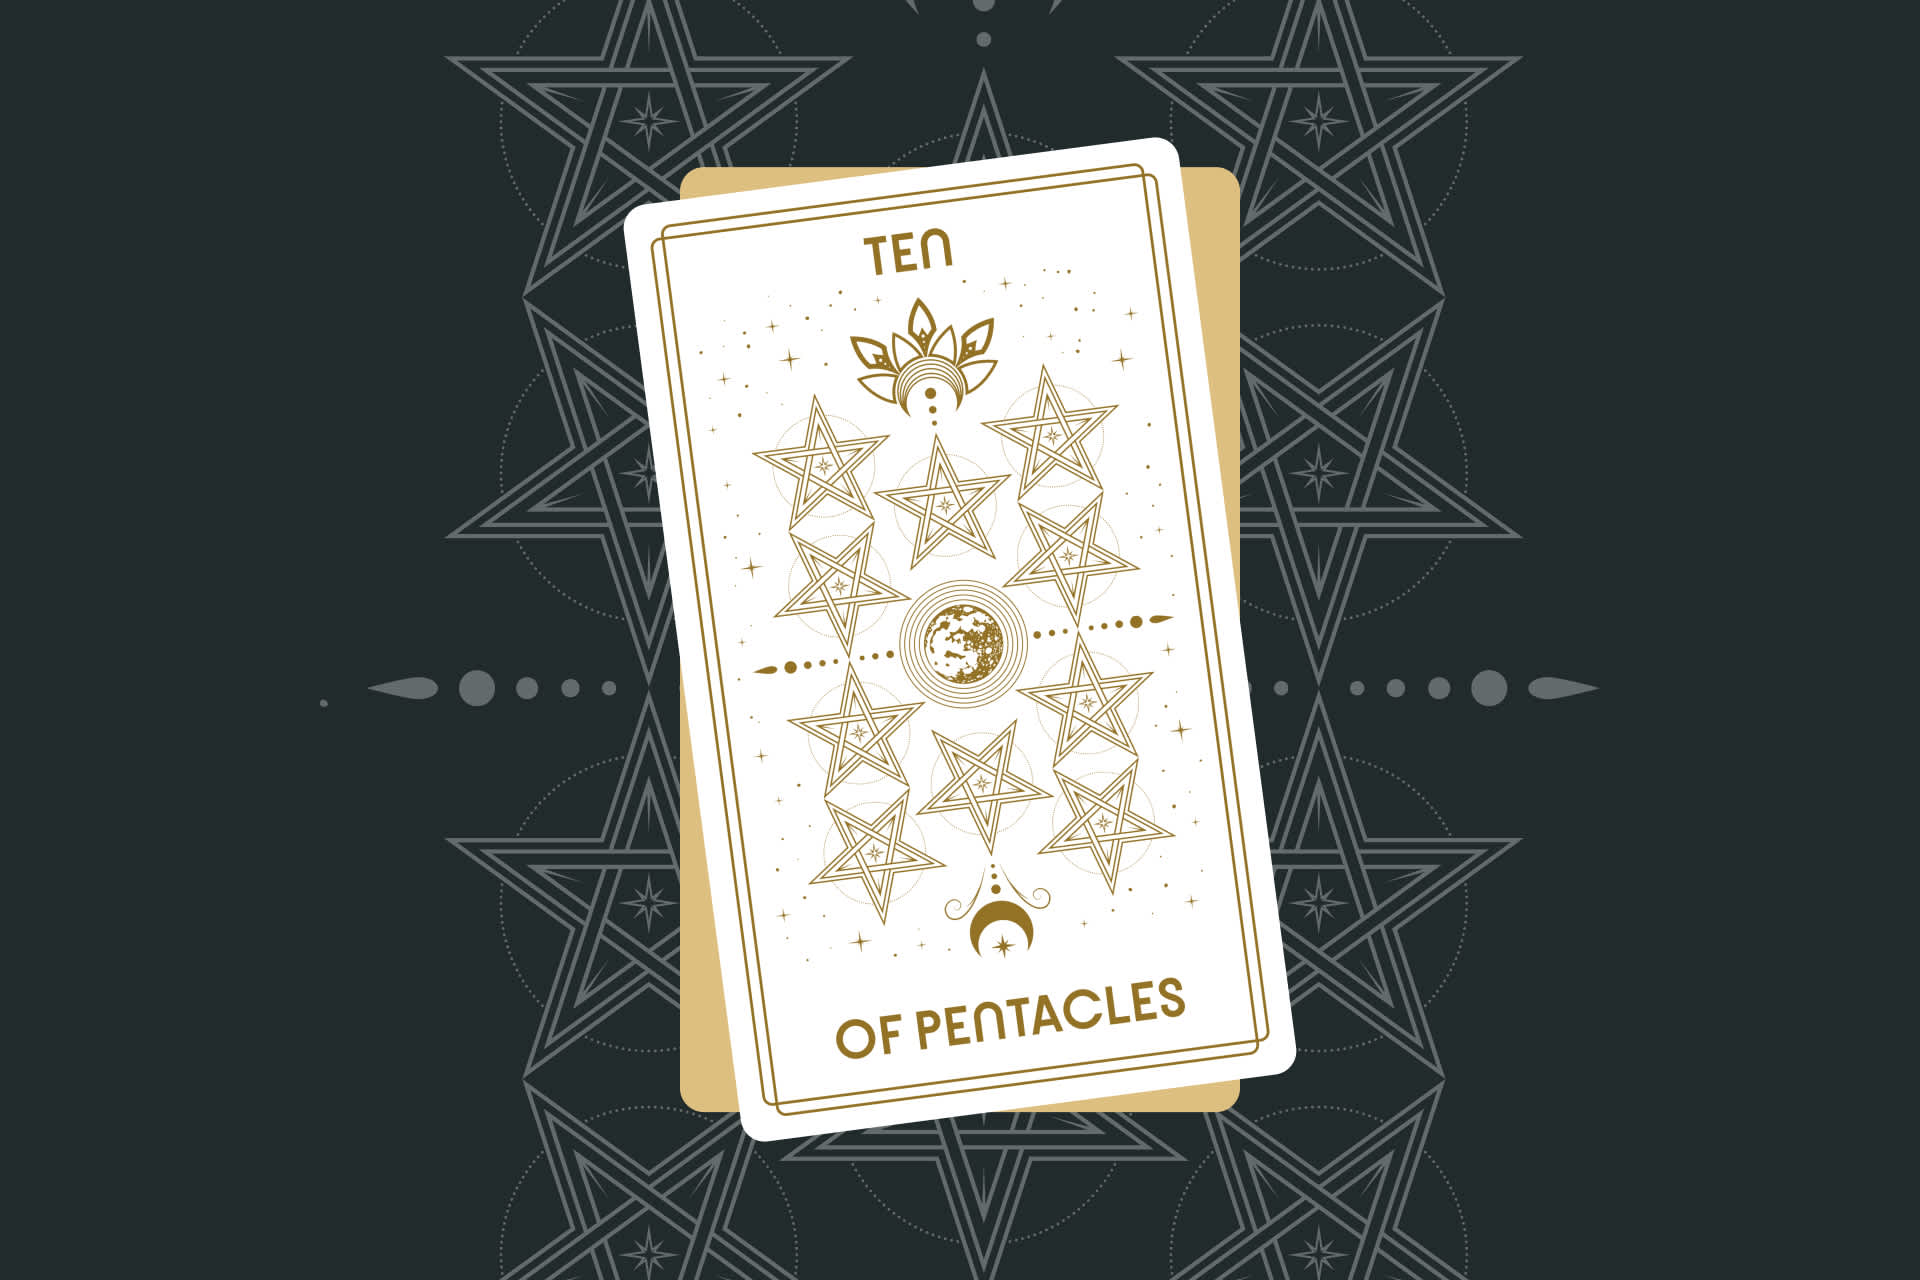 Ten of Pentacles Tarot Card